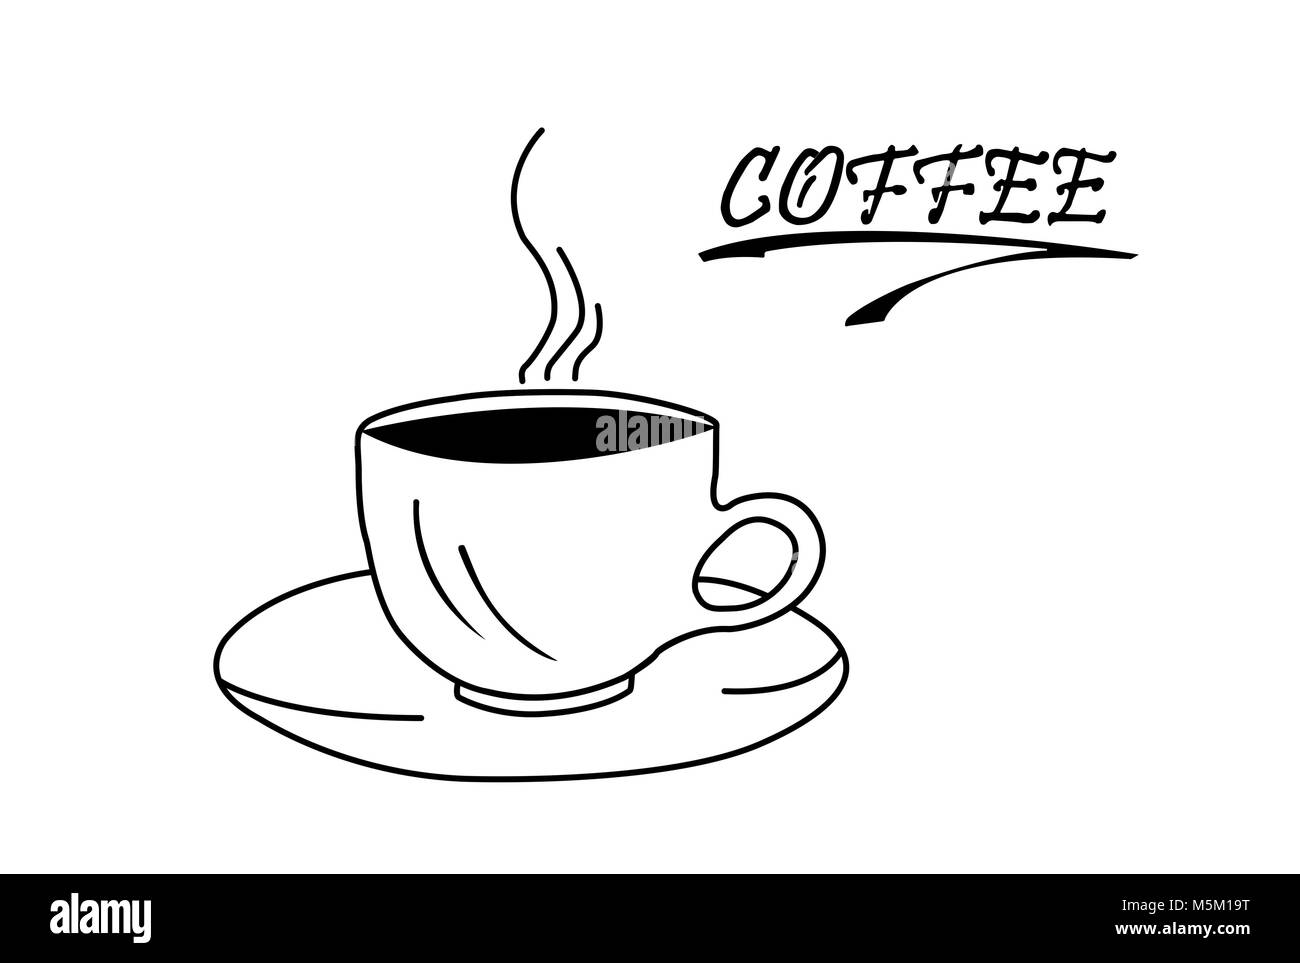 Weißer Hintergrund Silhouette der Tasse mit heißem Kaffee auf der Untertasse. Die Inschrift Kaffee. Weißer Hintergrund. Stockfoto